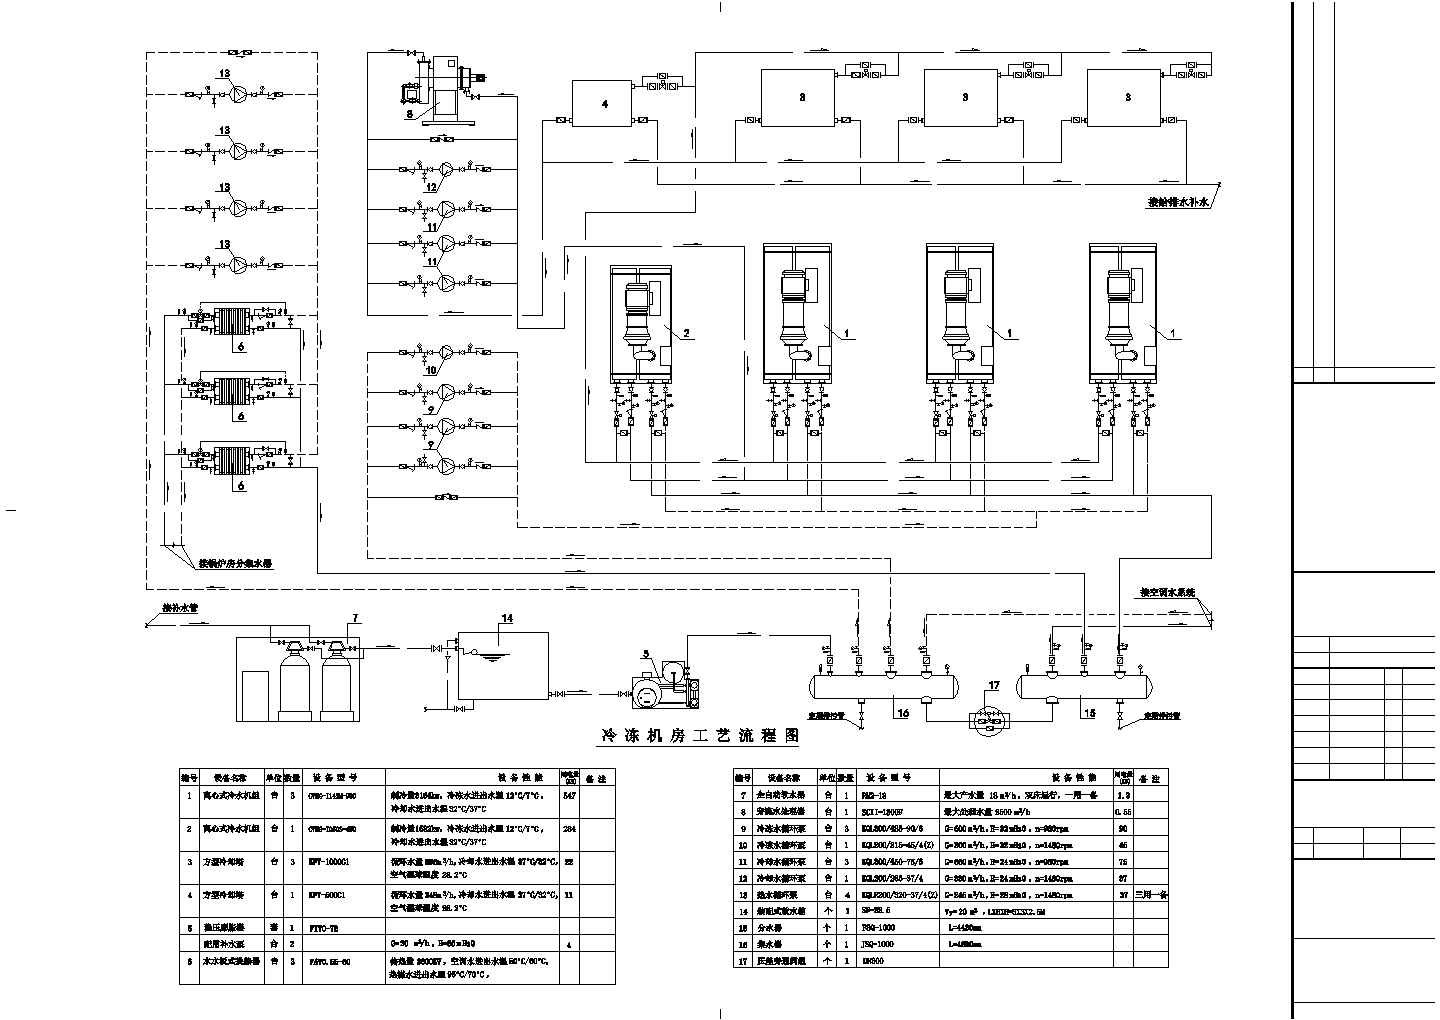 某动力站动力系统设计全套图纸(制冷机房 锅炉房)